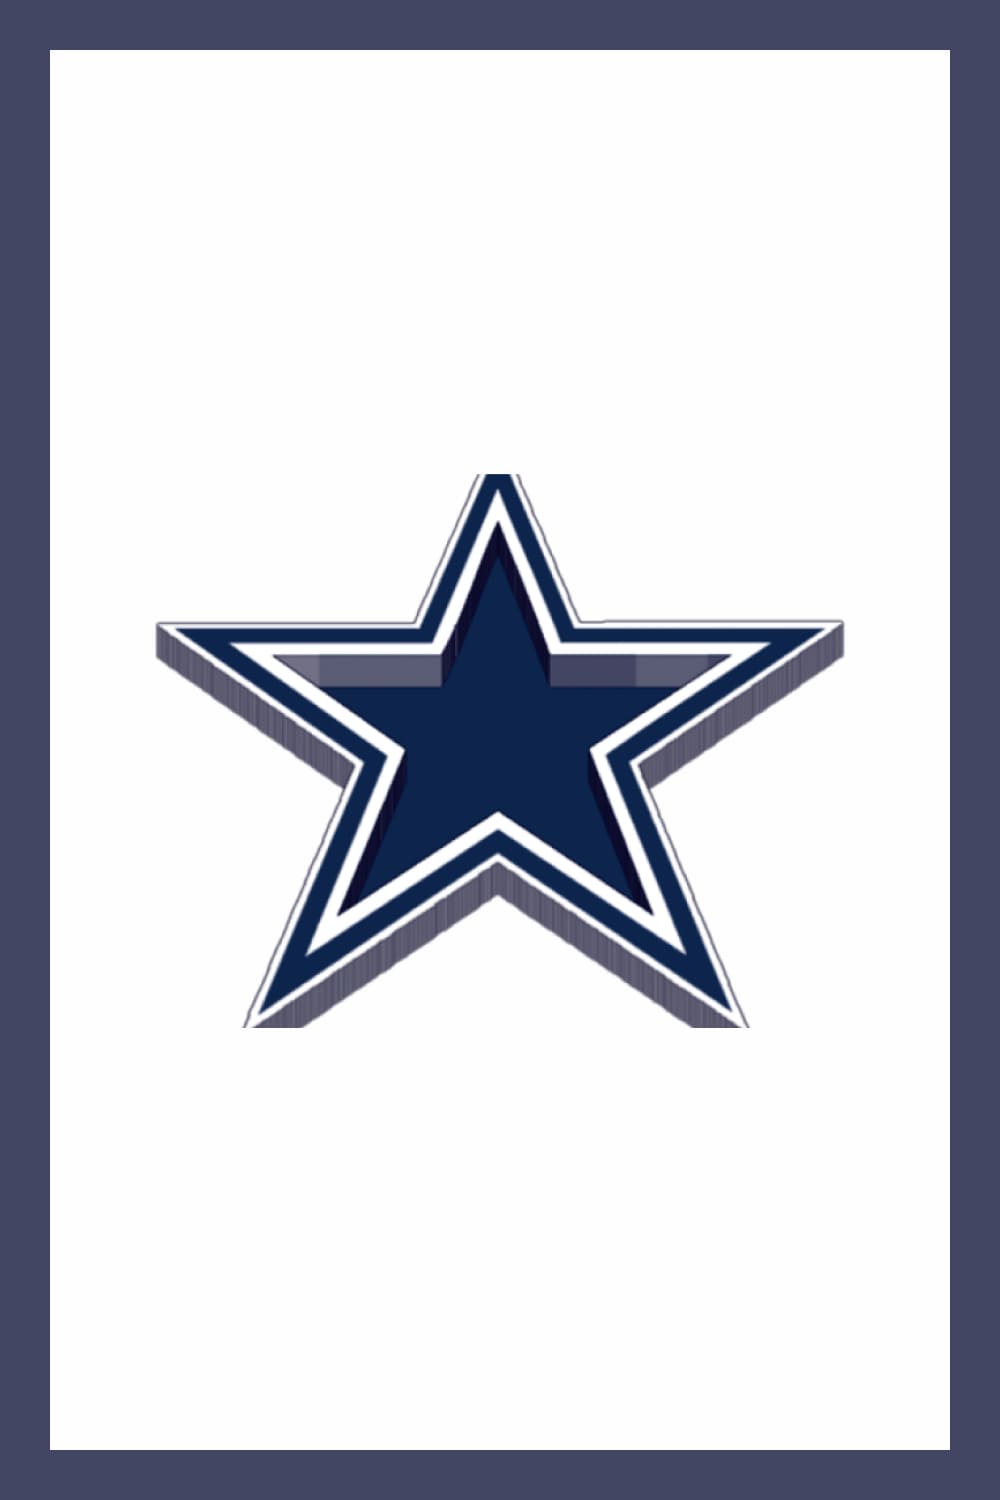 Three dimensional blue star of Dallas Cowboys.